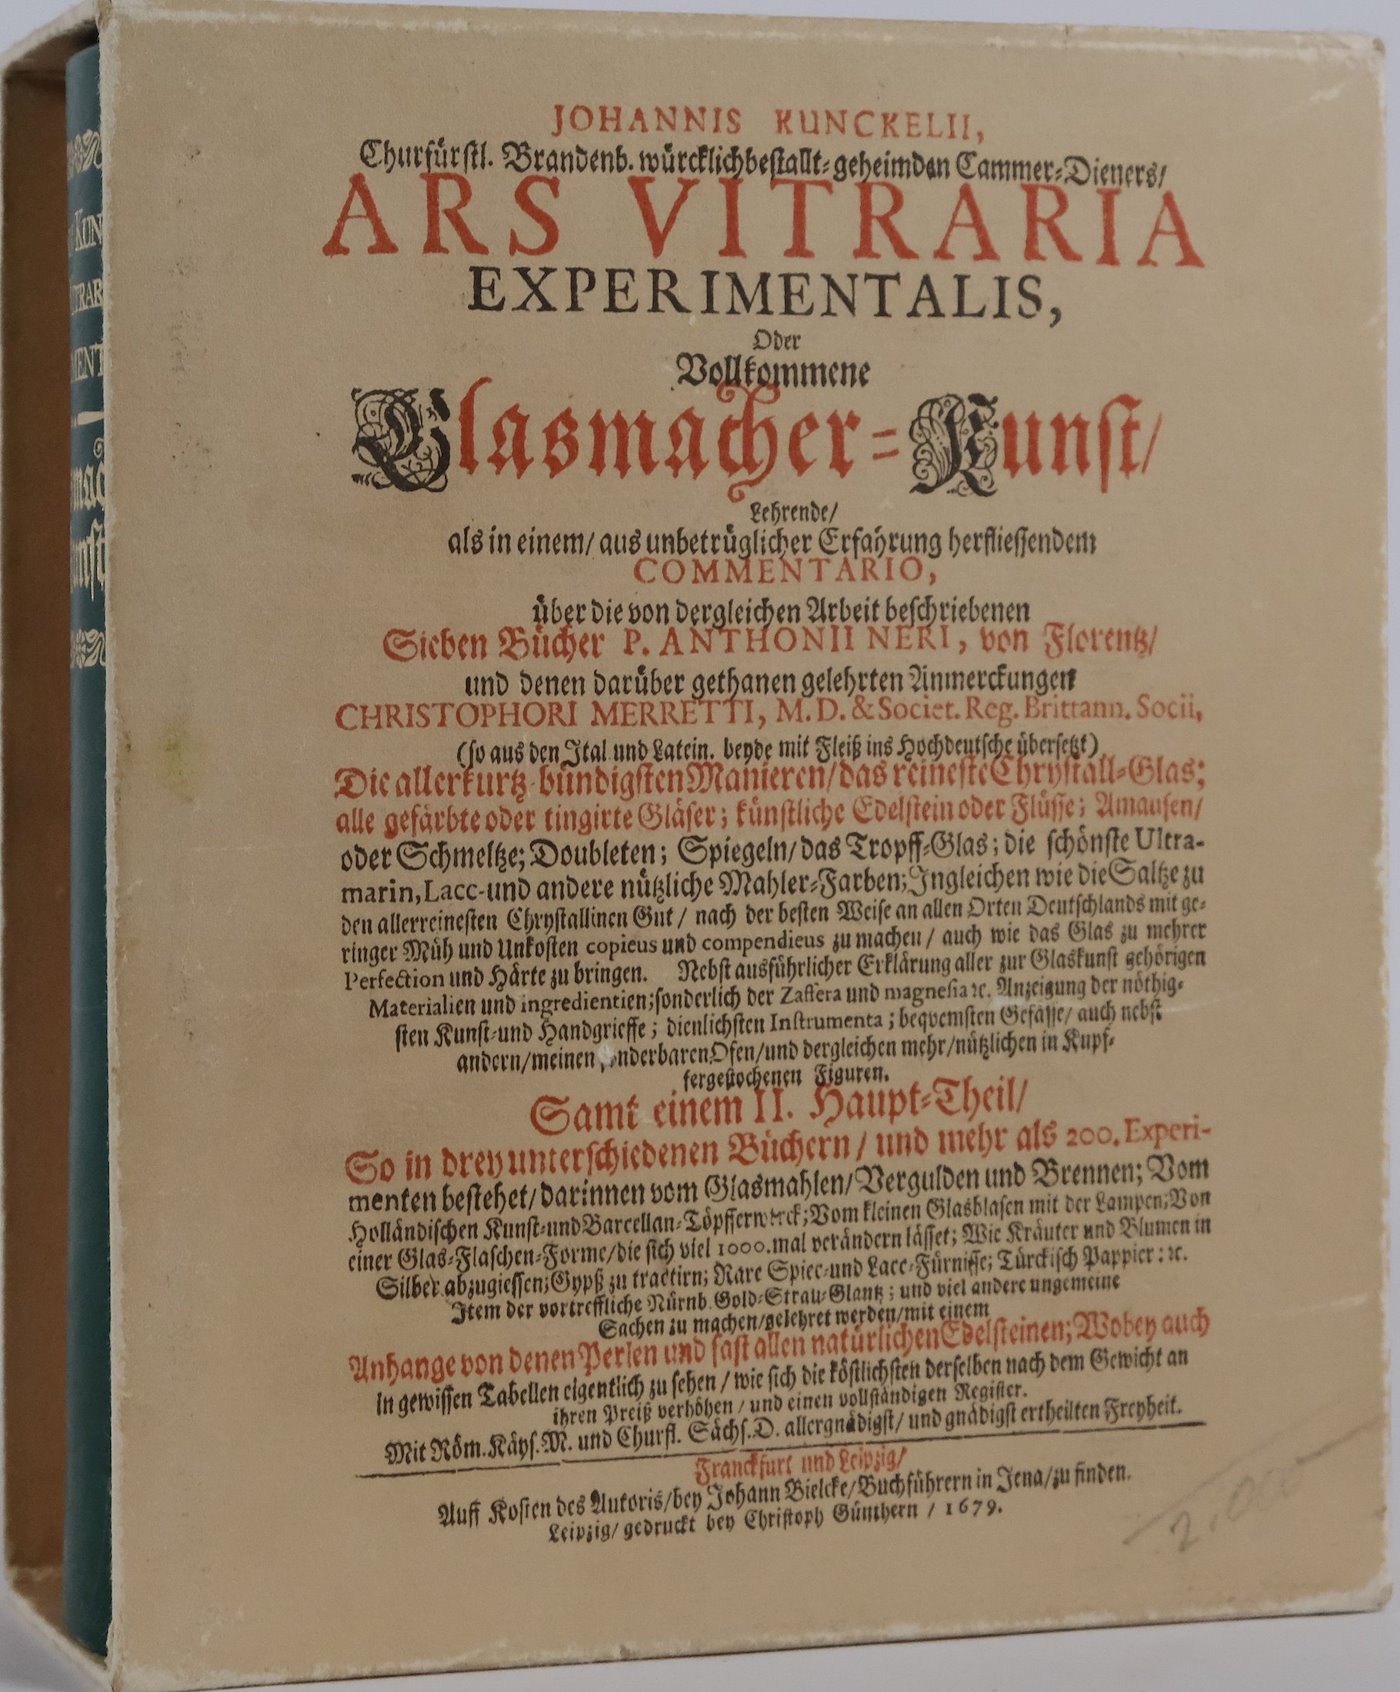 Johann Kunckel - Ars Vitraria Experimentalis - Glasmacher Kunst (faksimile)